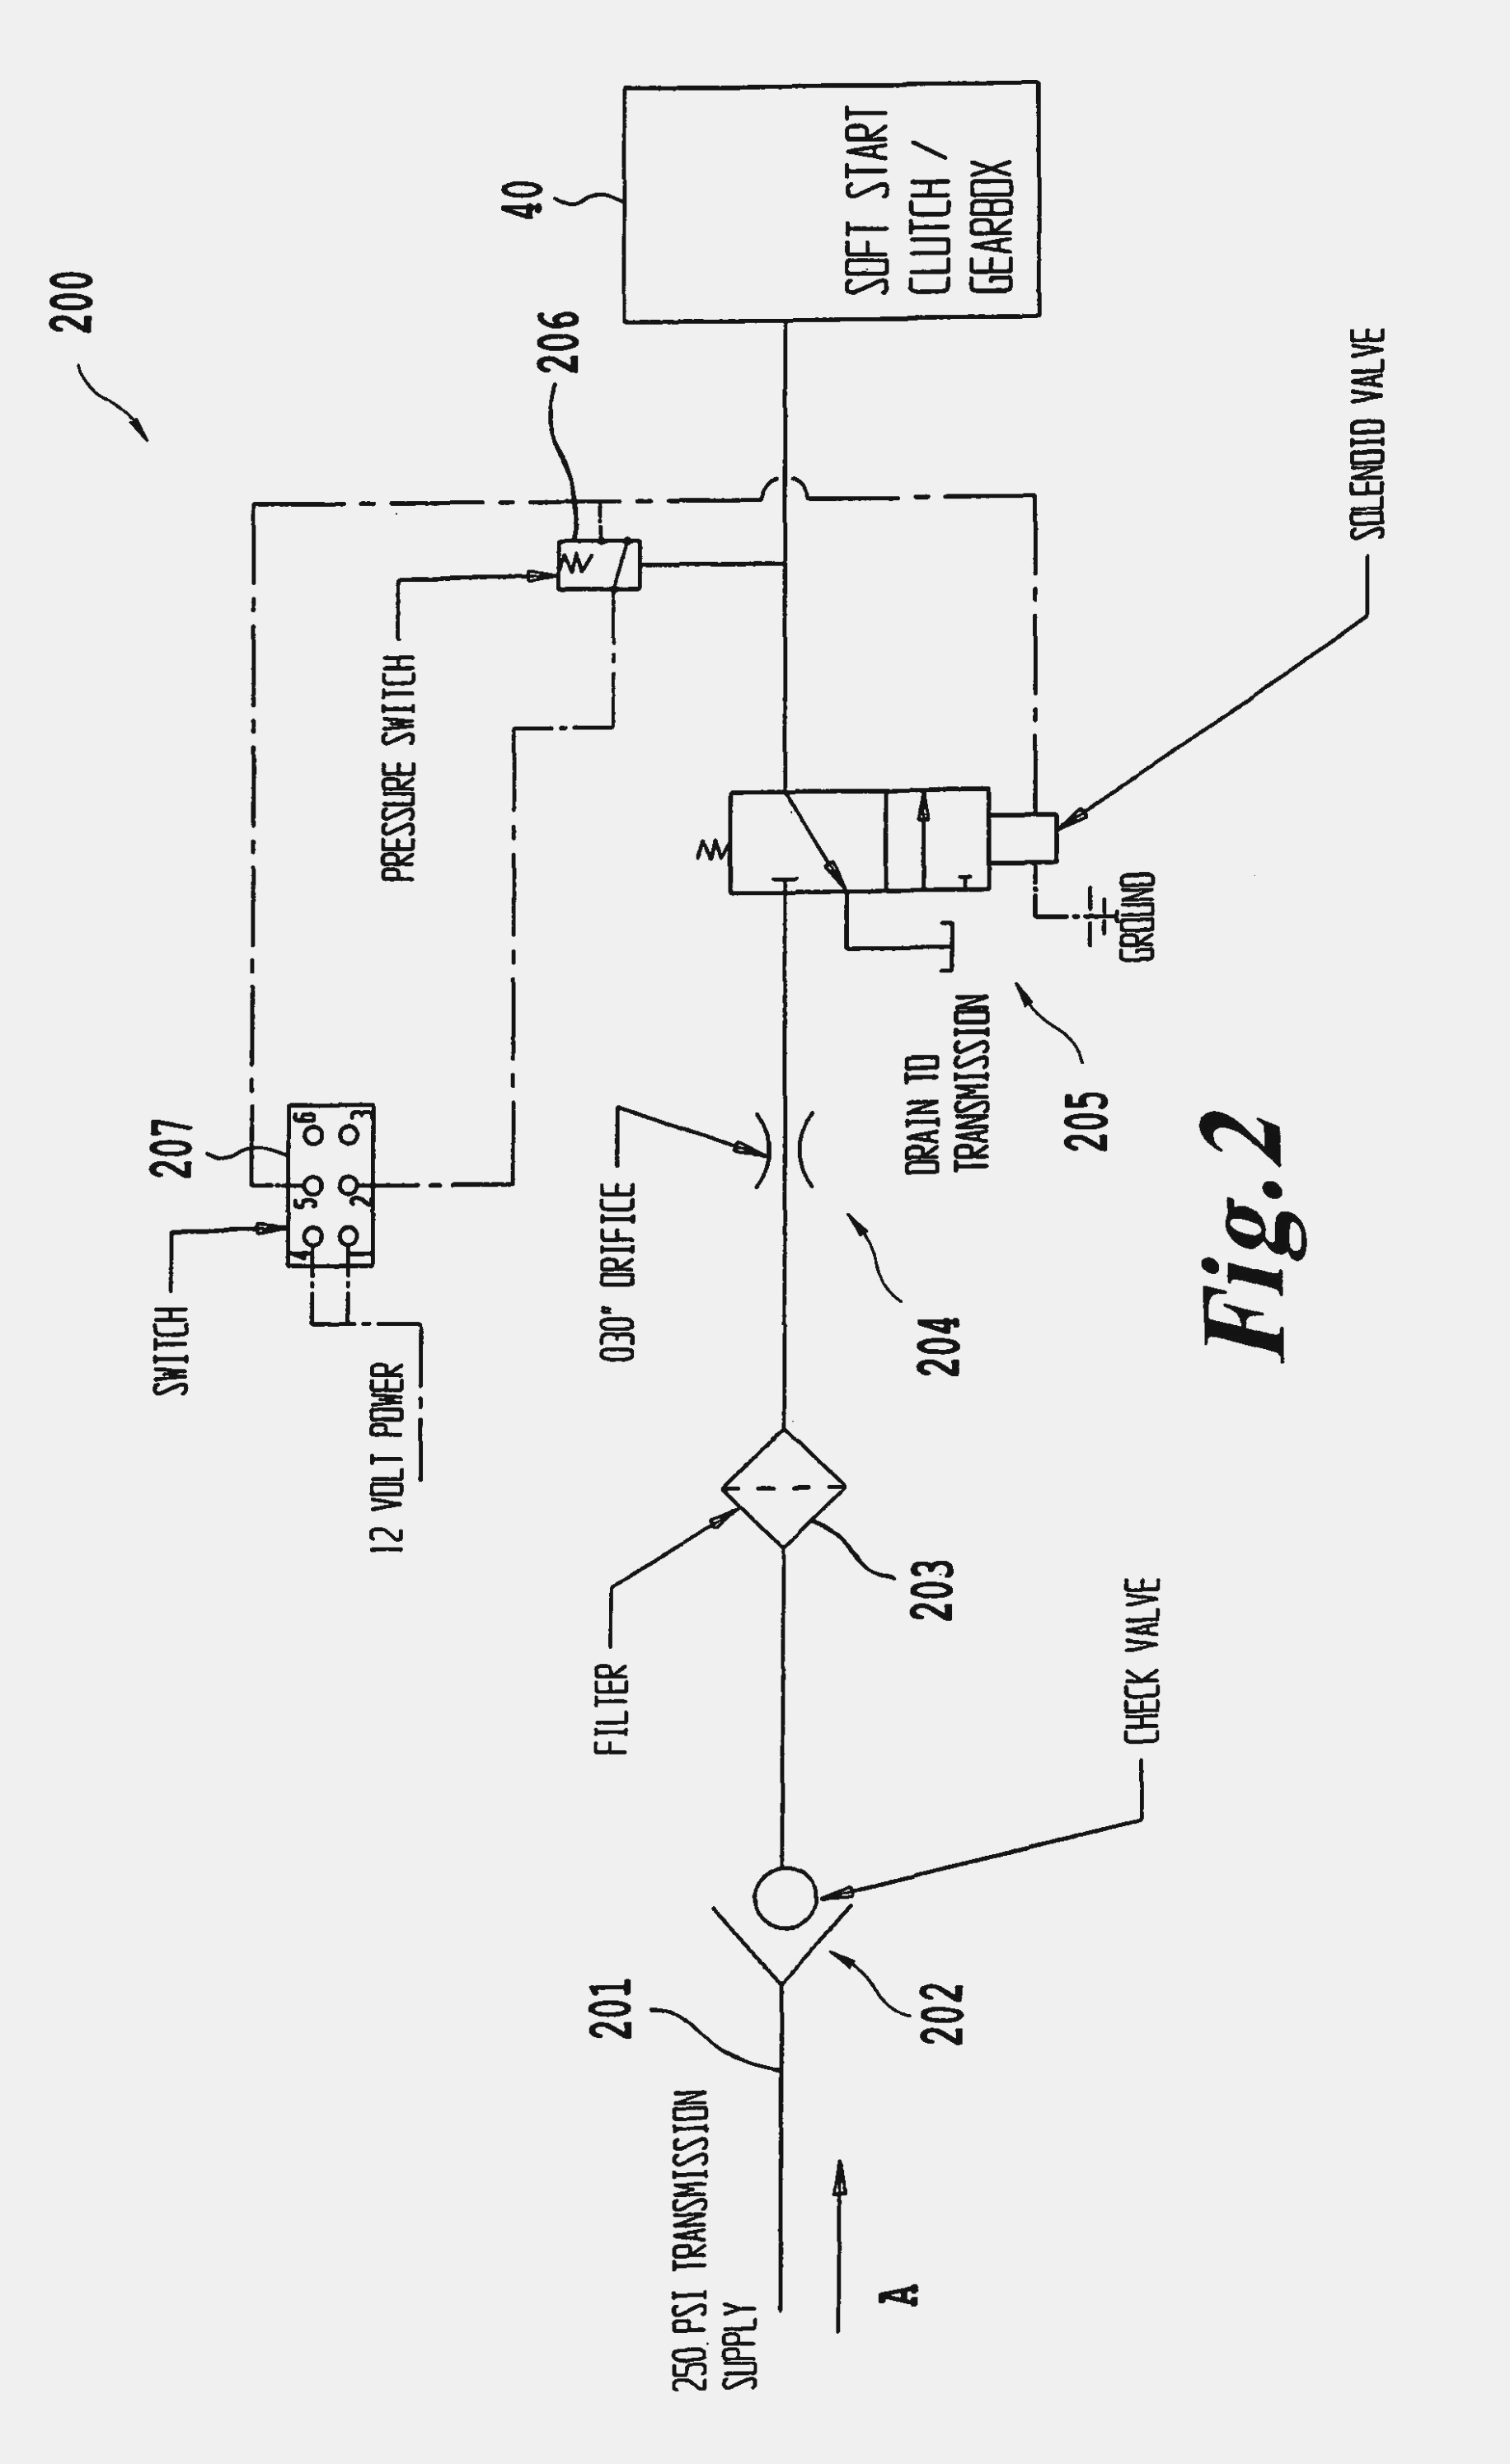 12 Volt Hydraulic Pump Wiring Diagram 3 Hydraulic Pump Wiring Diagram Wiring Diagram